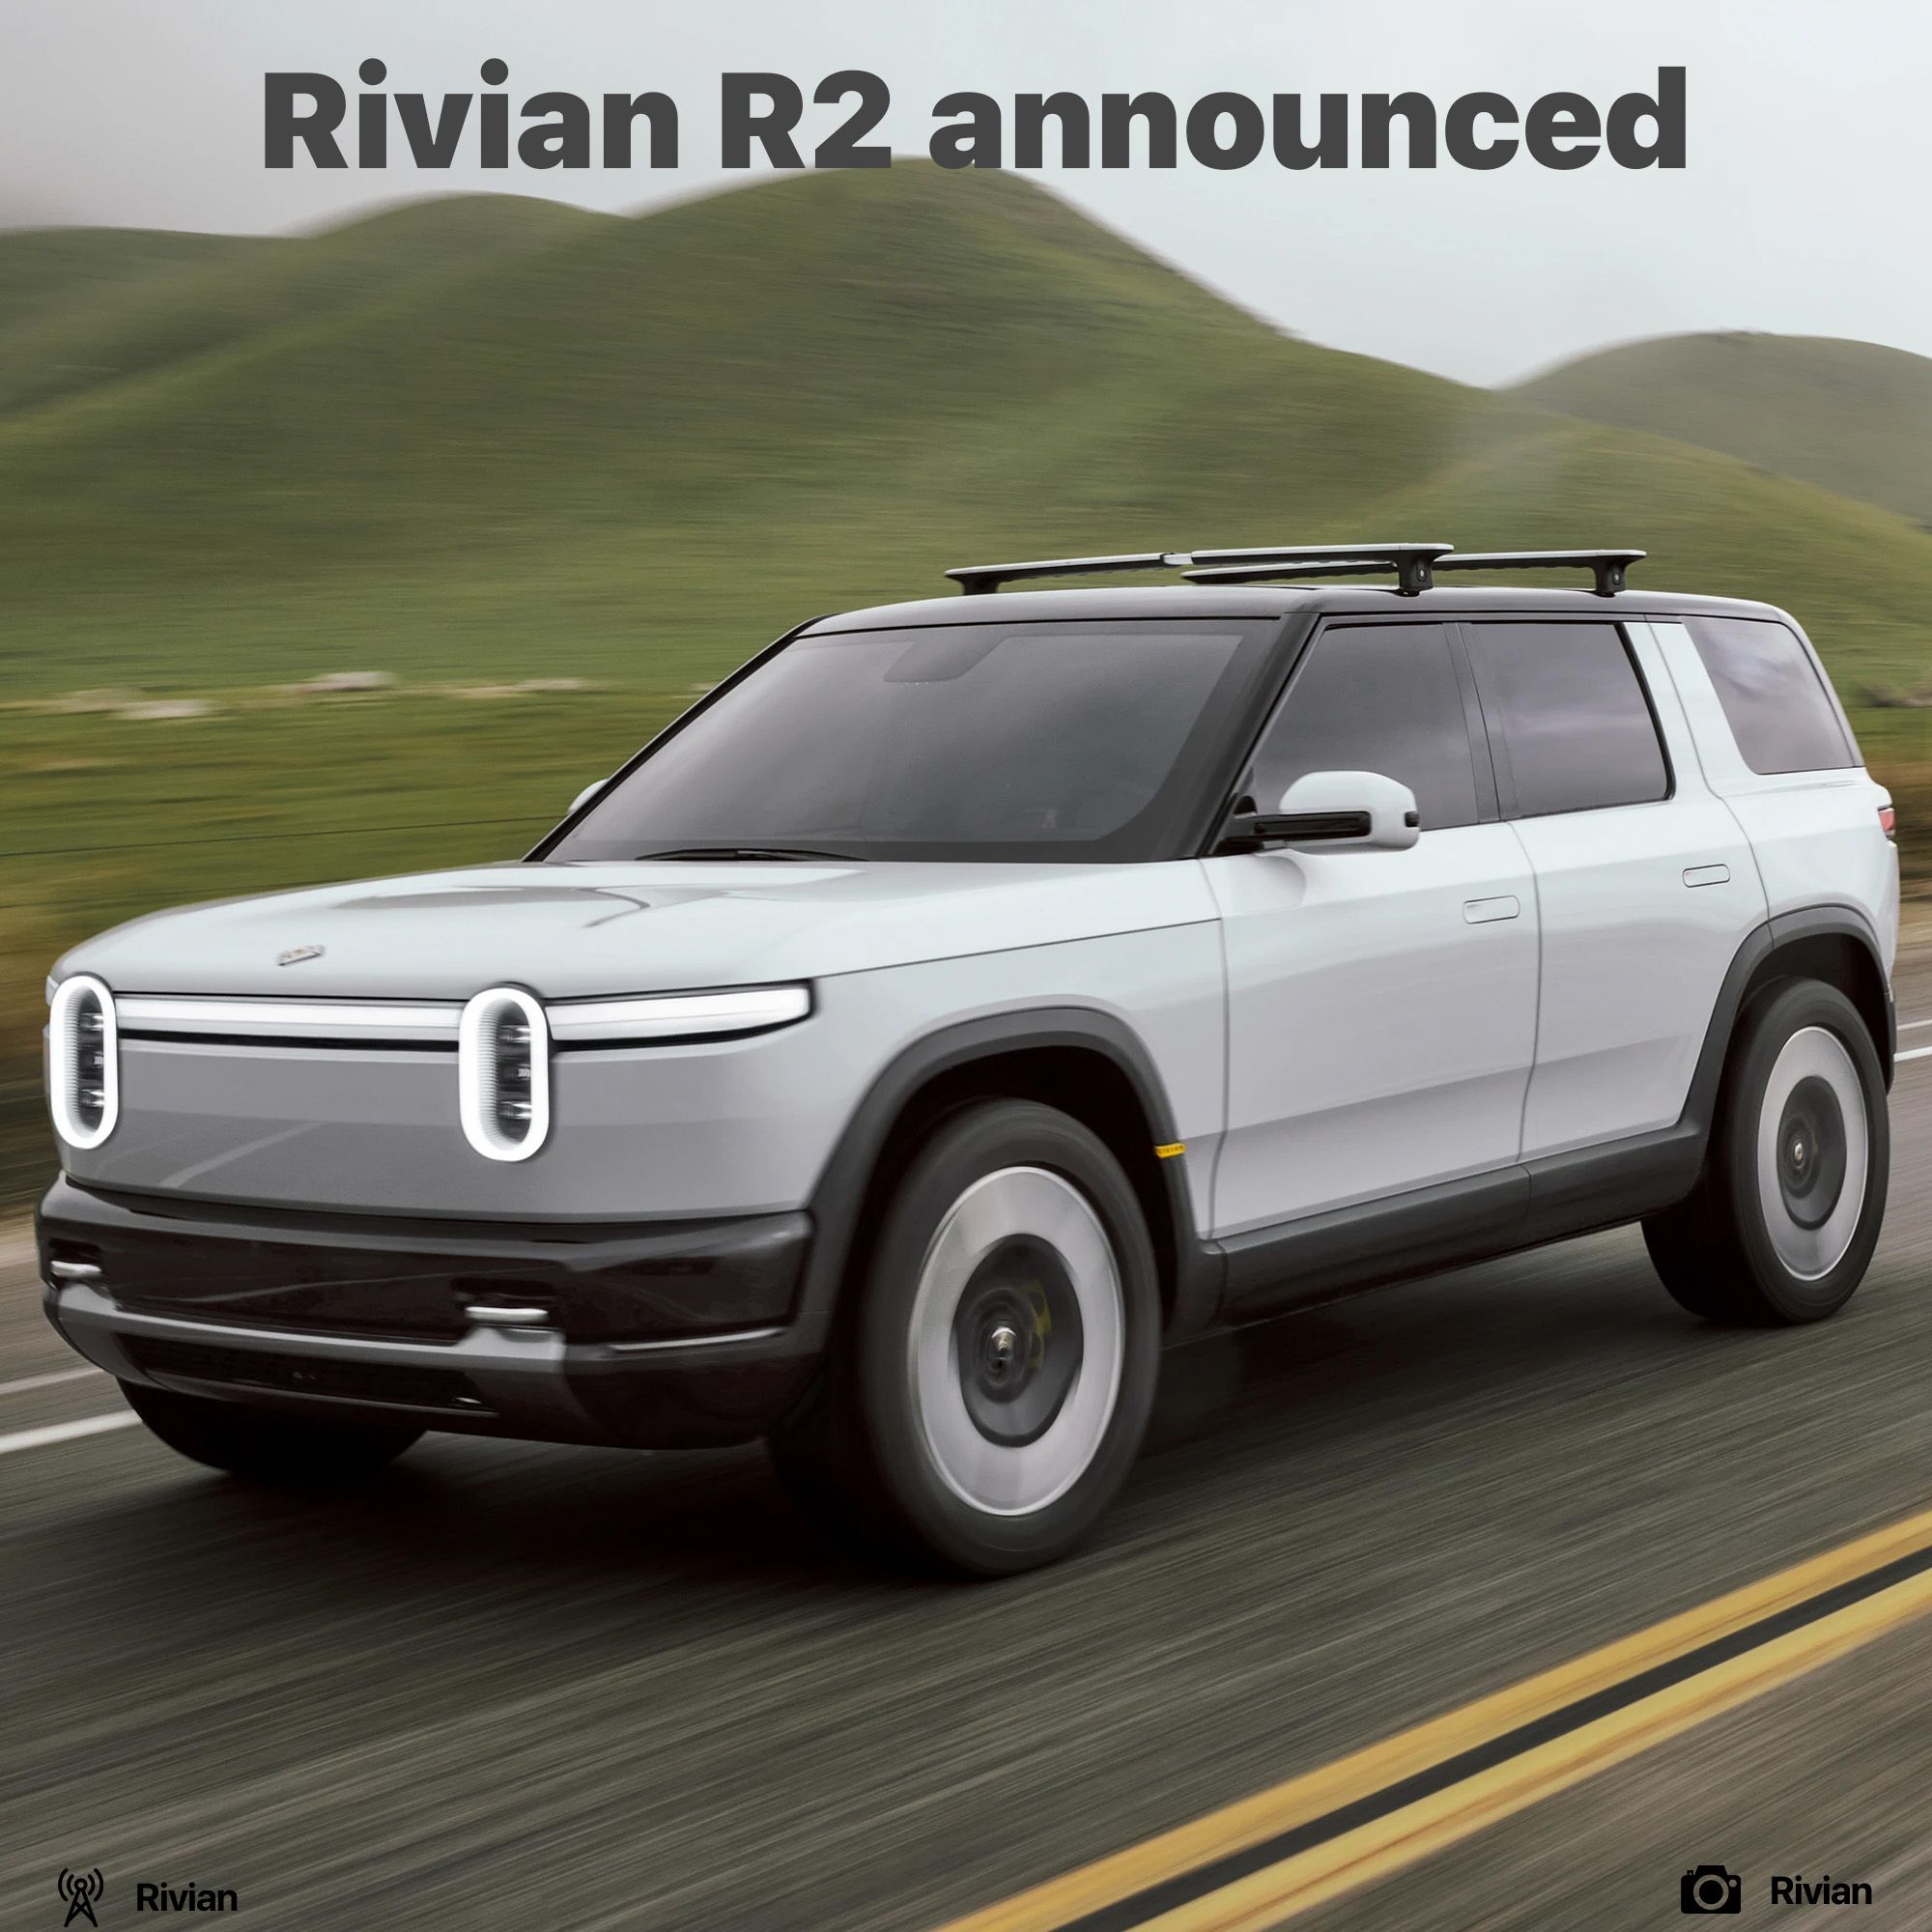 Rivian R2 announced